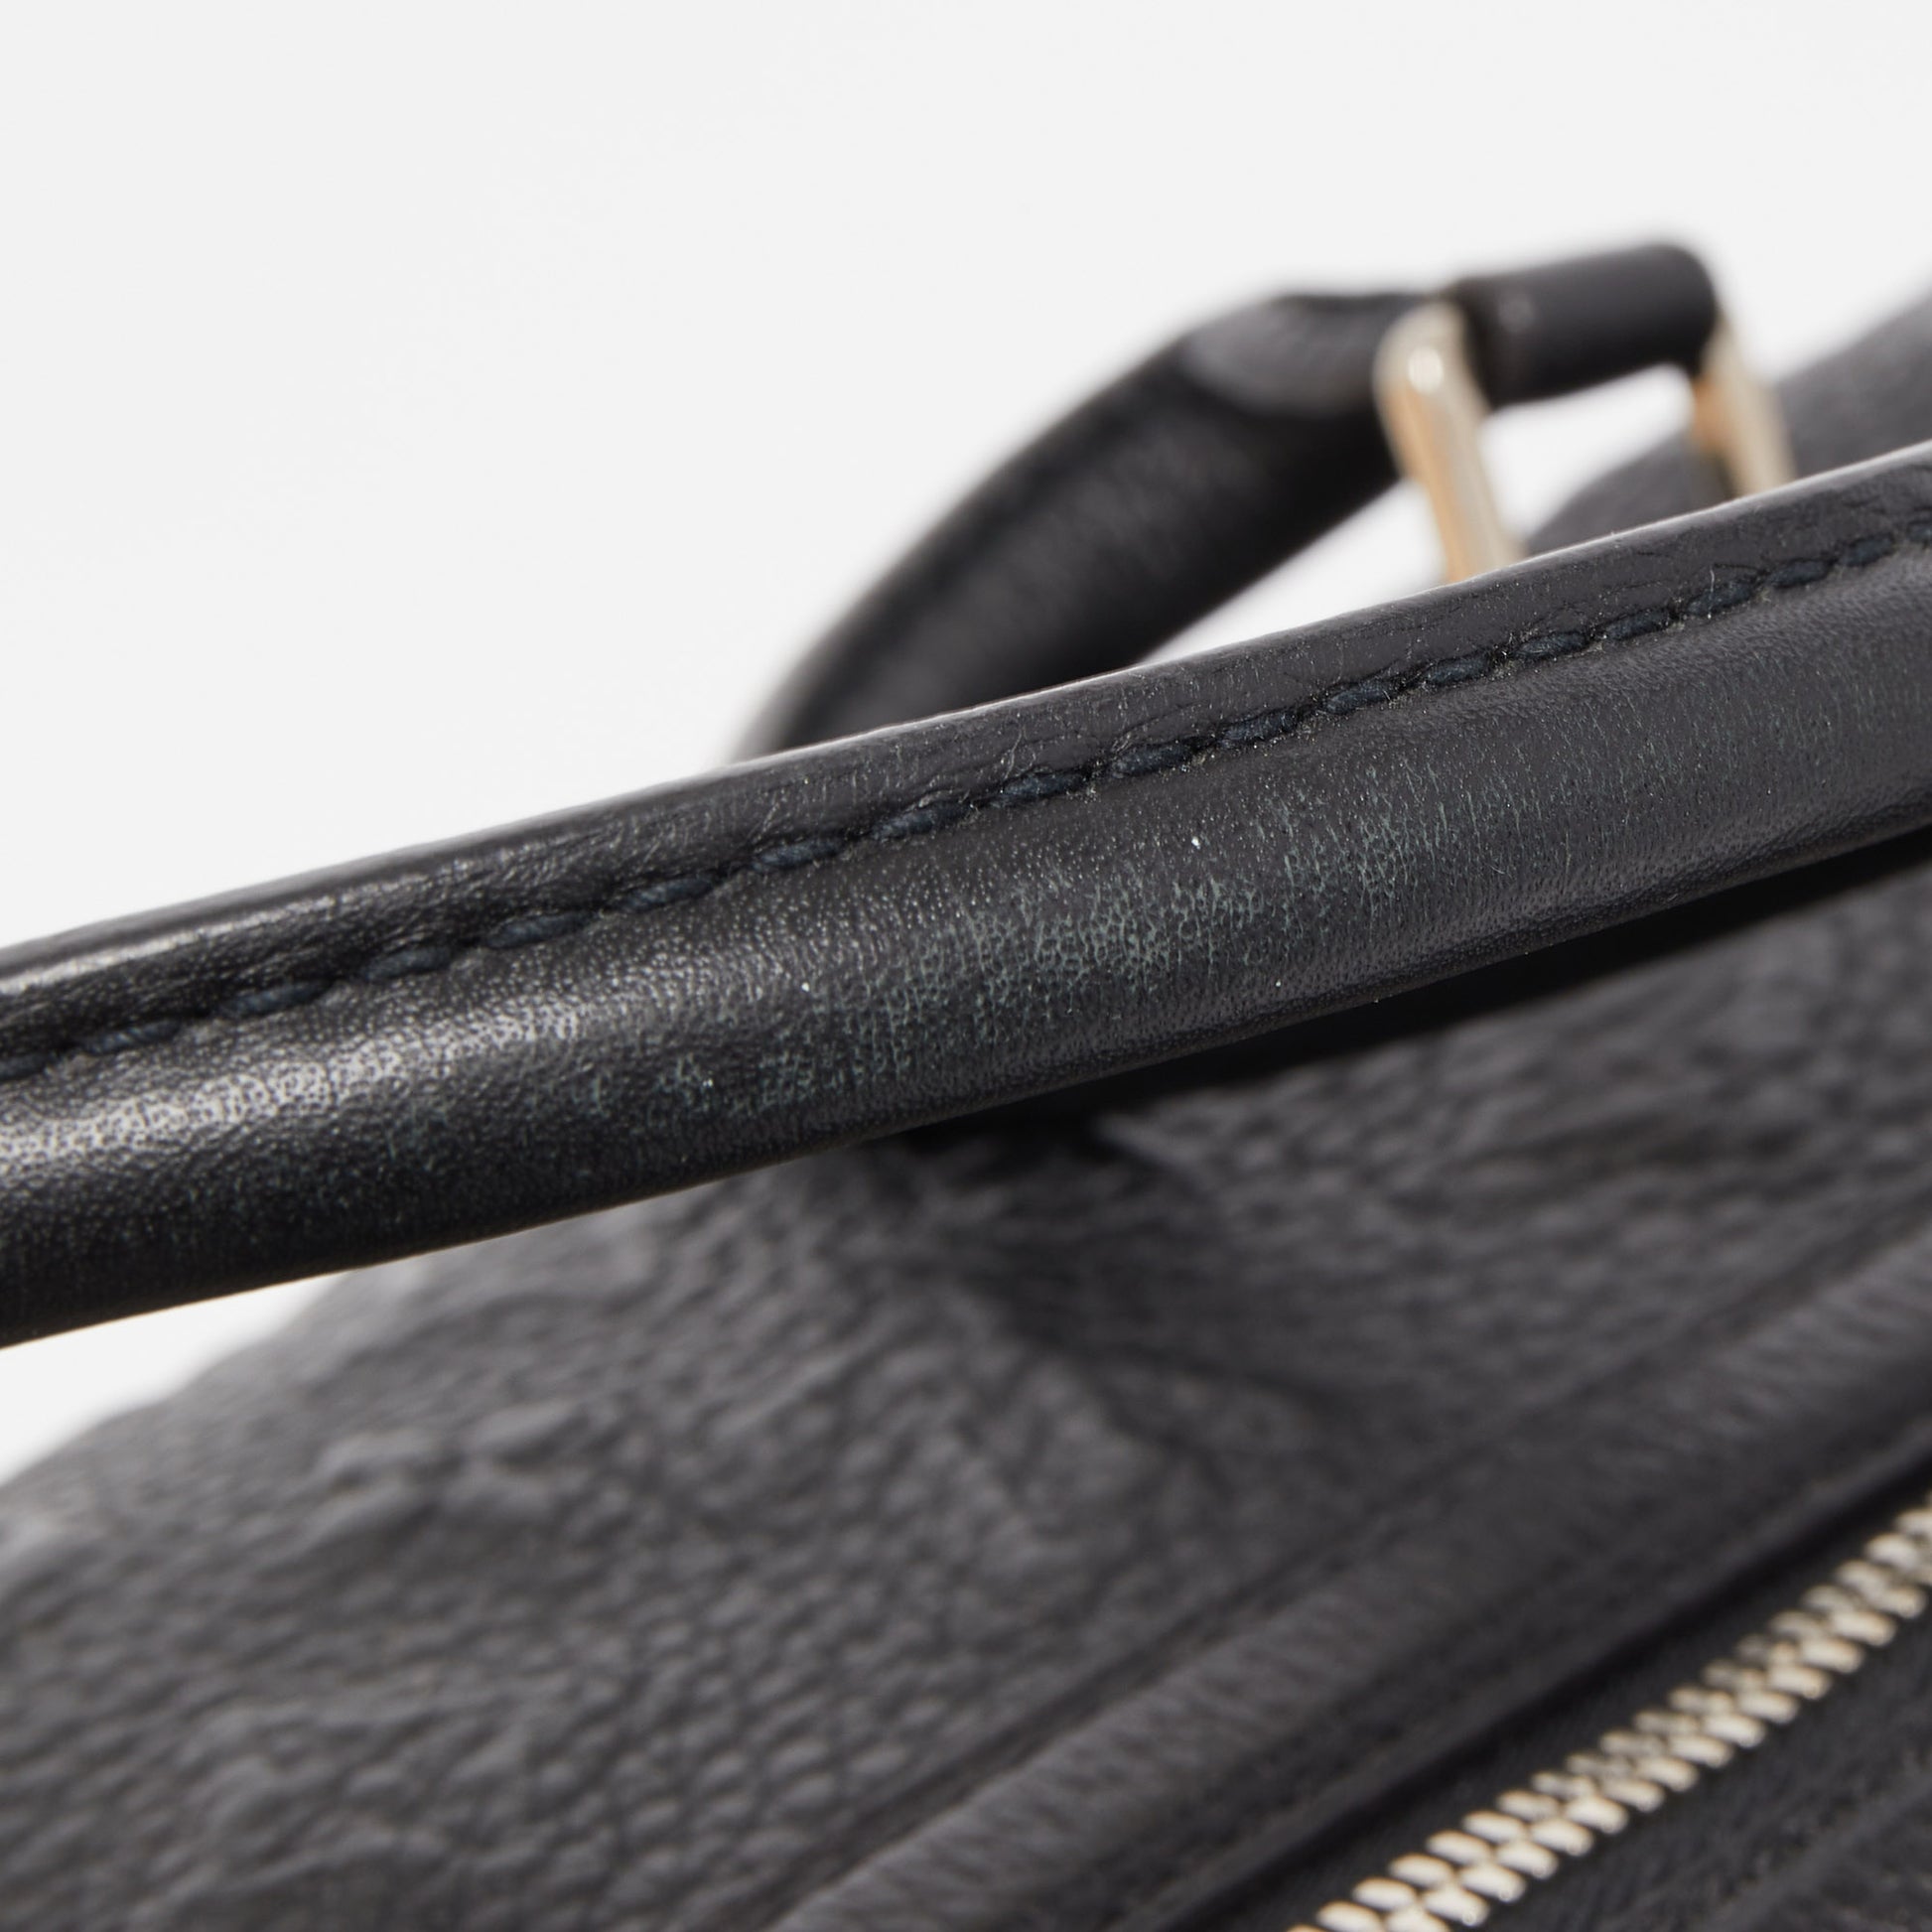 Louis Vuitton Black Monogram Revelation Neo Papillon GM Bag Louis Vuitton |  The Luxury Closet